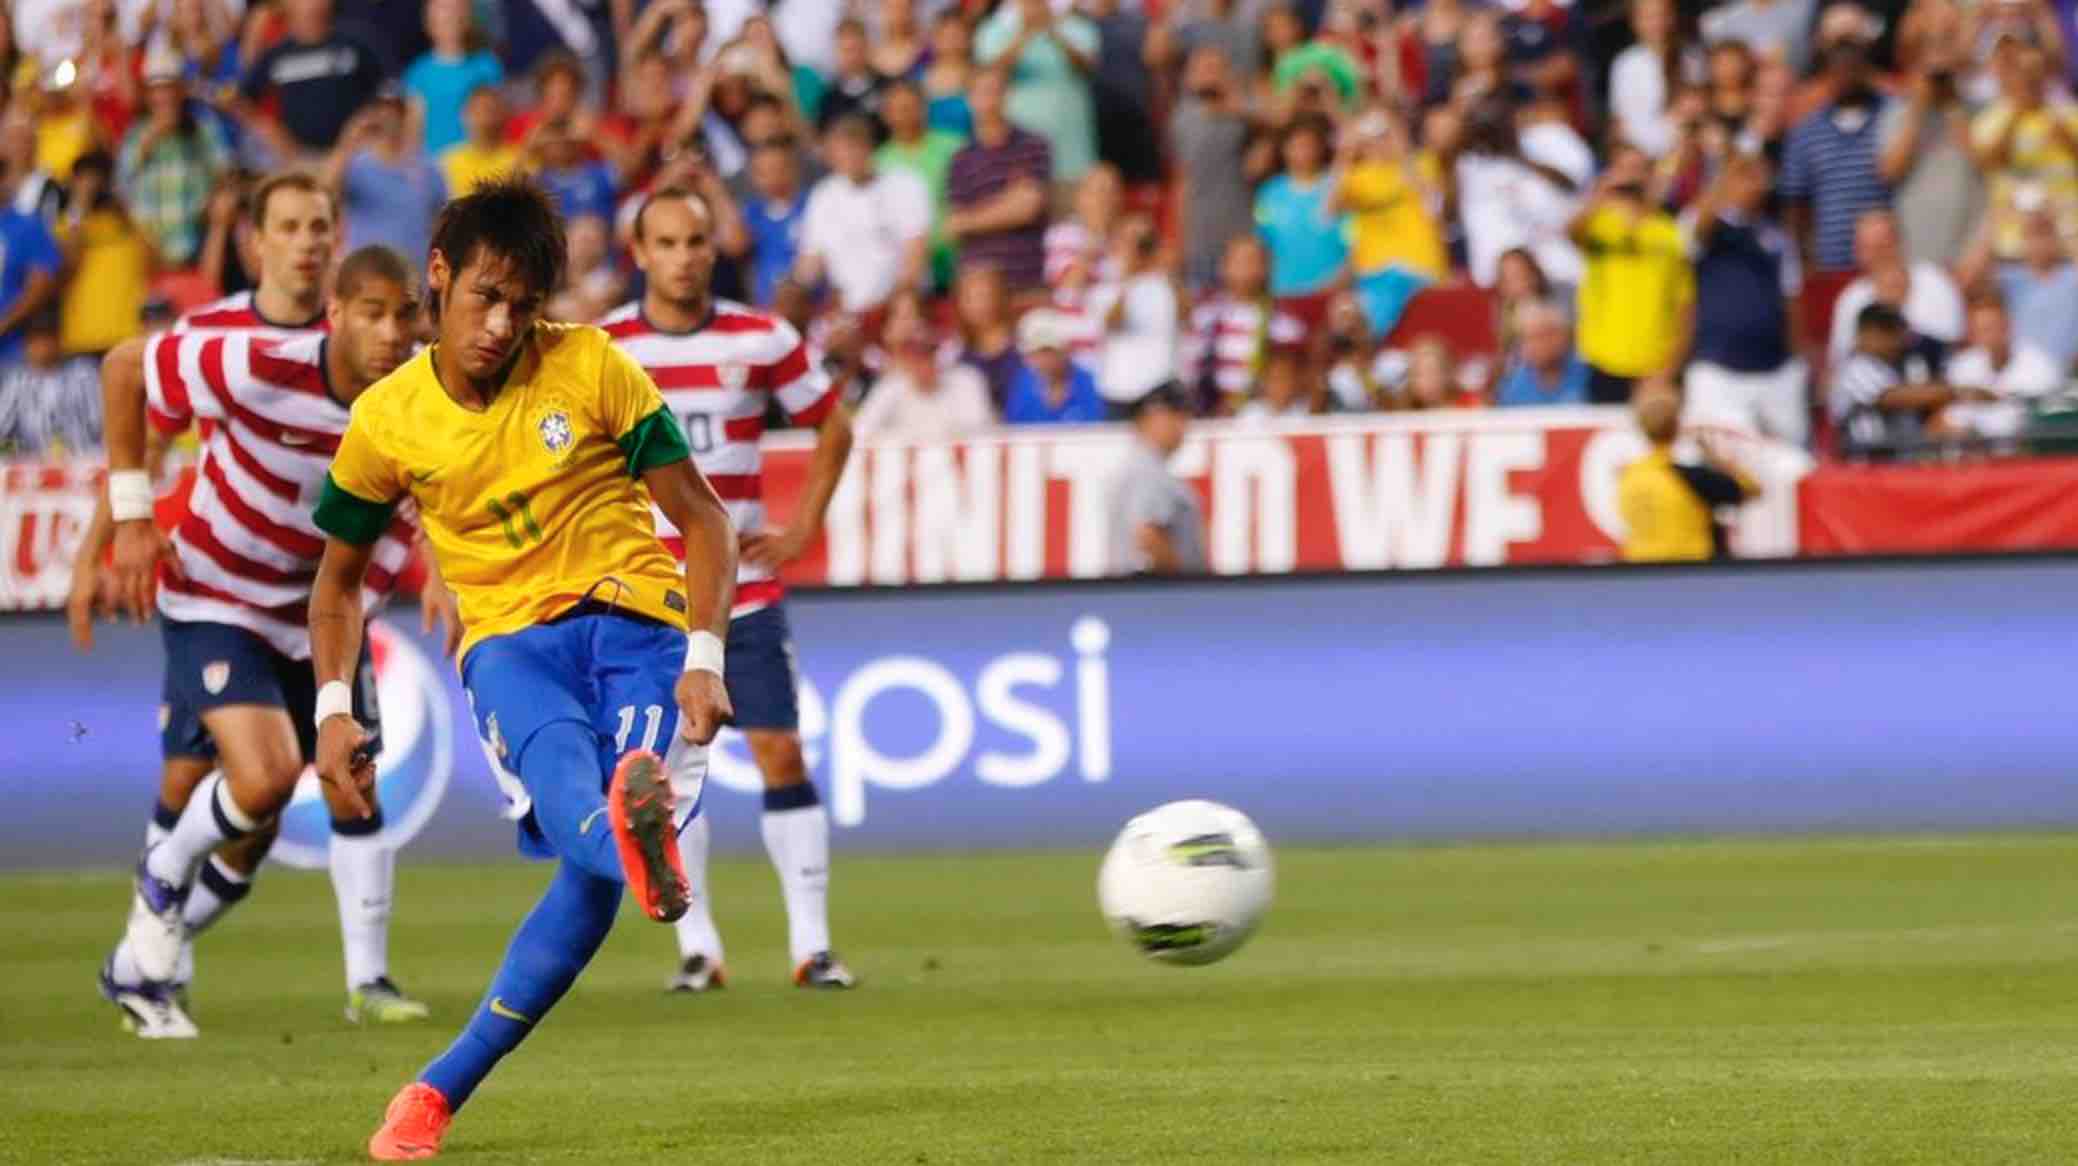 USMNT vs. Brazil friendly scheduled for September